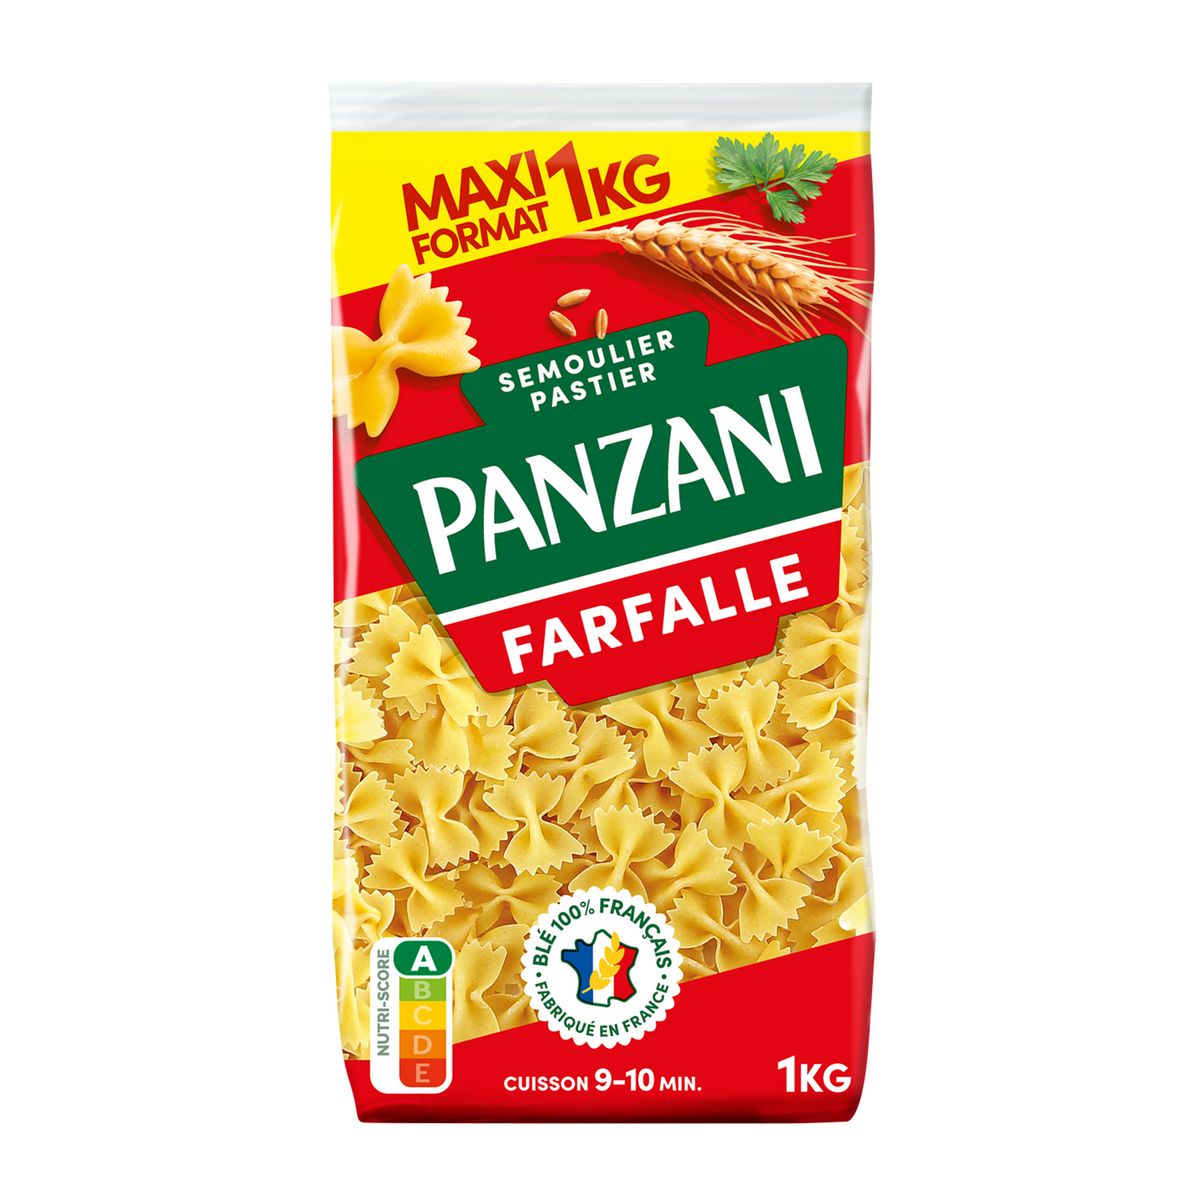 PANZANI Farfalle filière blé responsable français maxi format 1kg